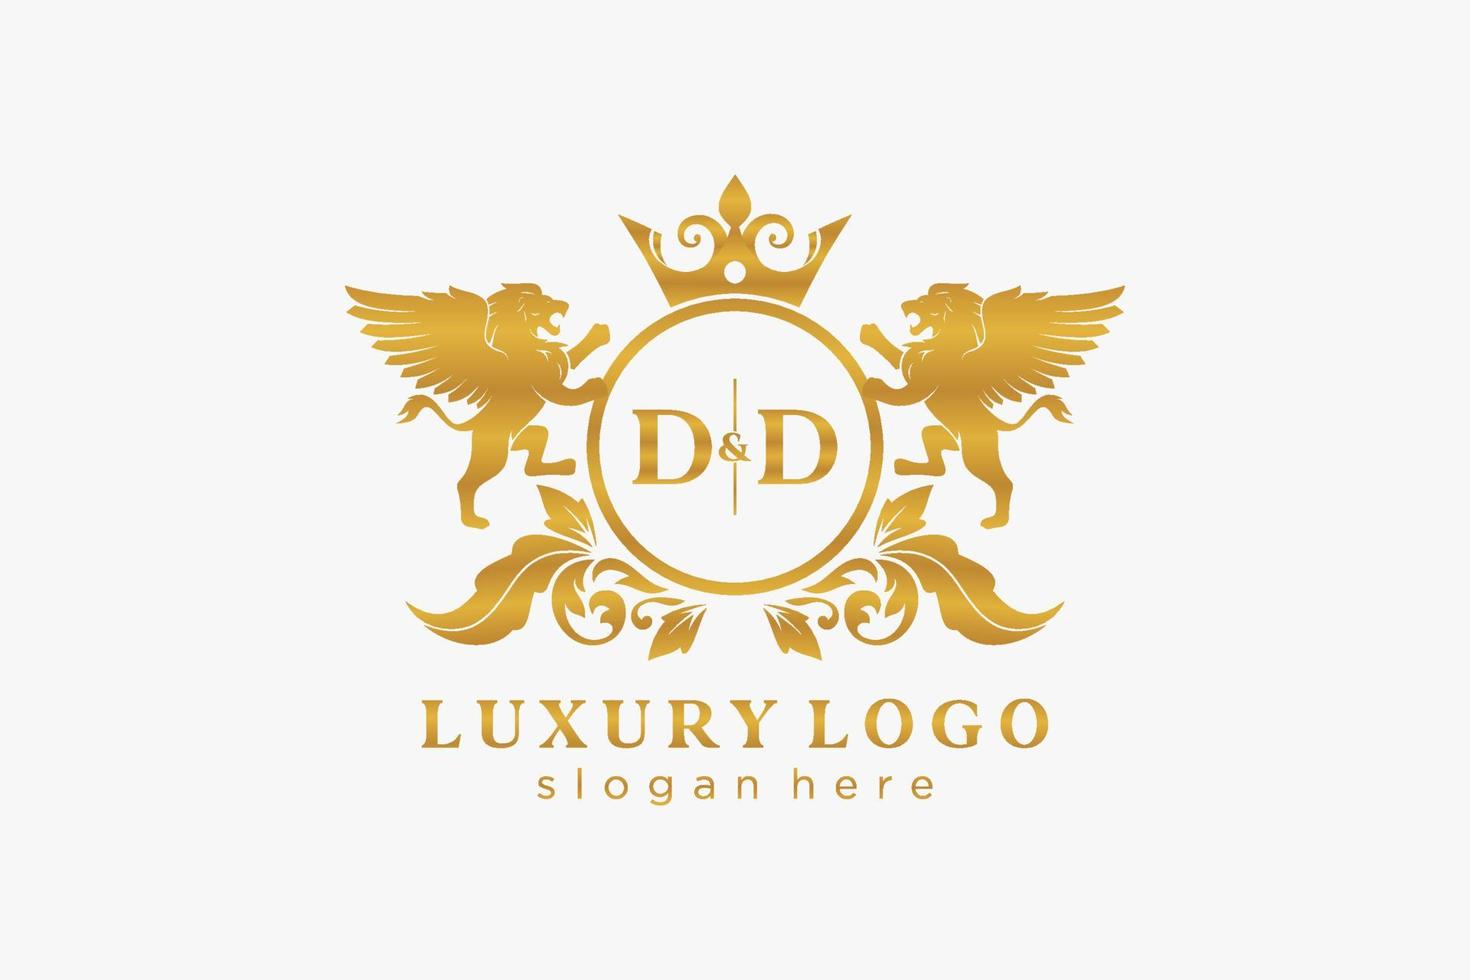 Initial dd Letter Lion Royal Luxury Logo Vorlage in Vektorgrafiken für Restaurant, Lizenzgebühren, Boutique, Café, Hotel, Heraldik, Schmuck, Mode und andere Vektorillustrationen. vektor